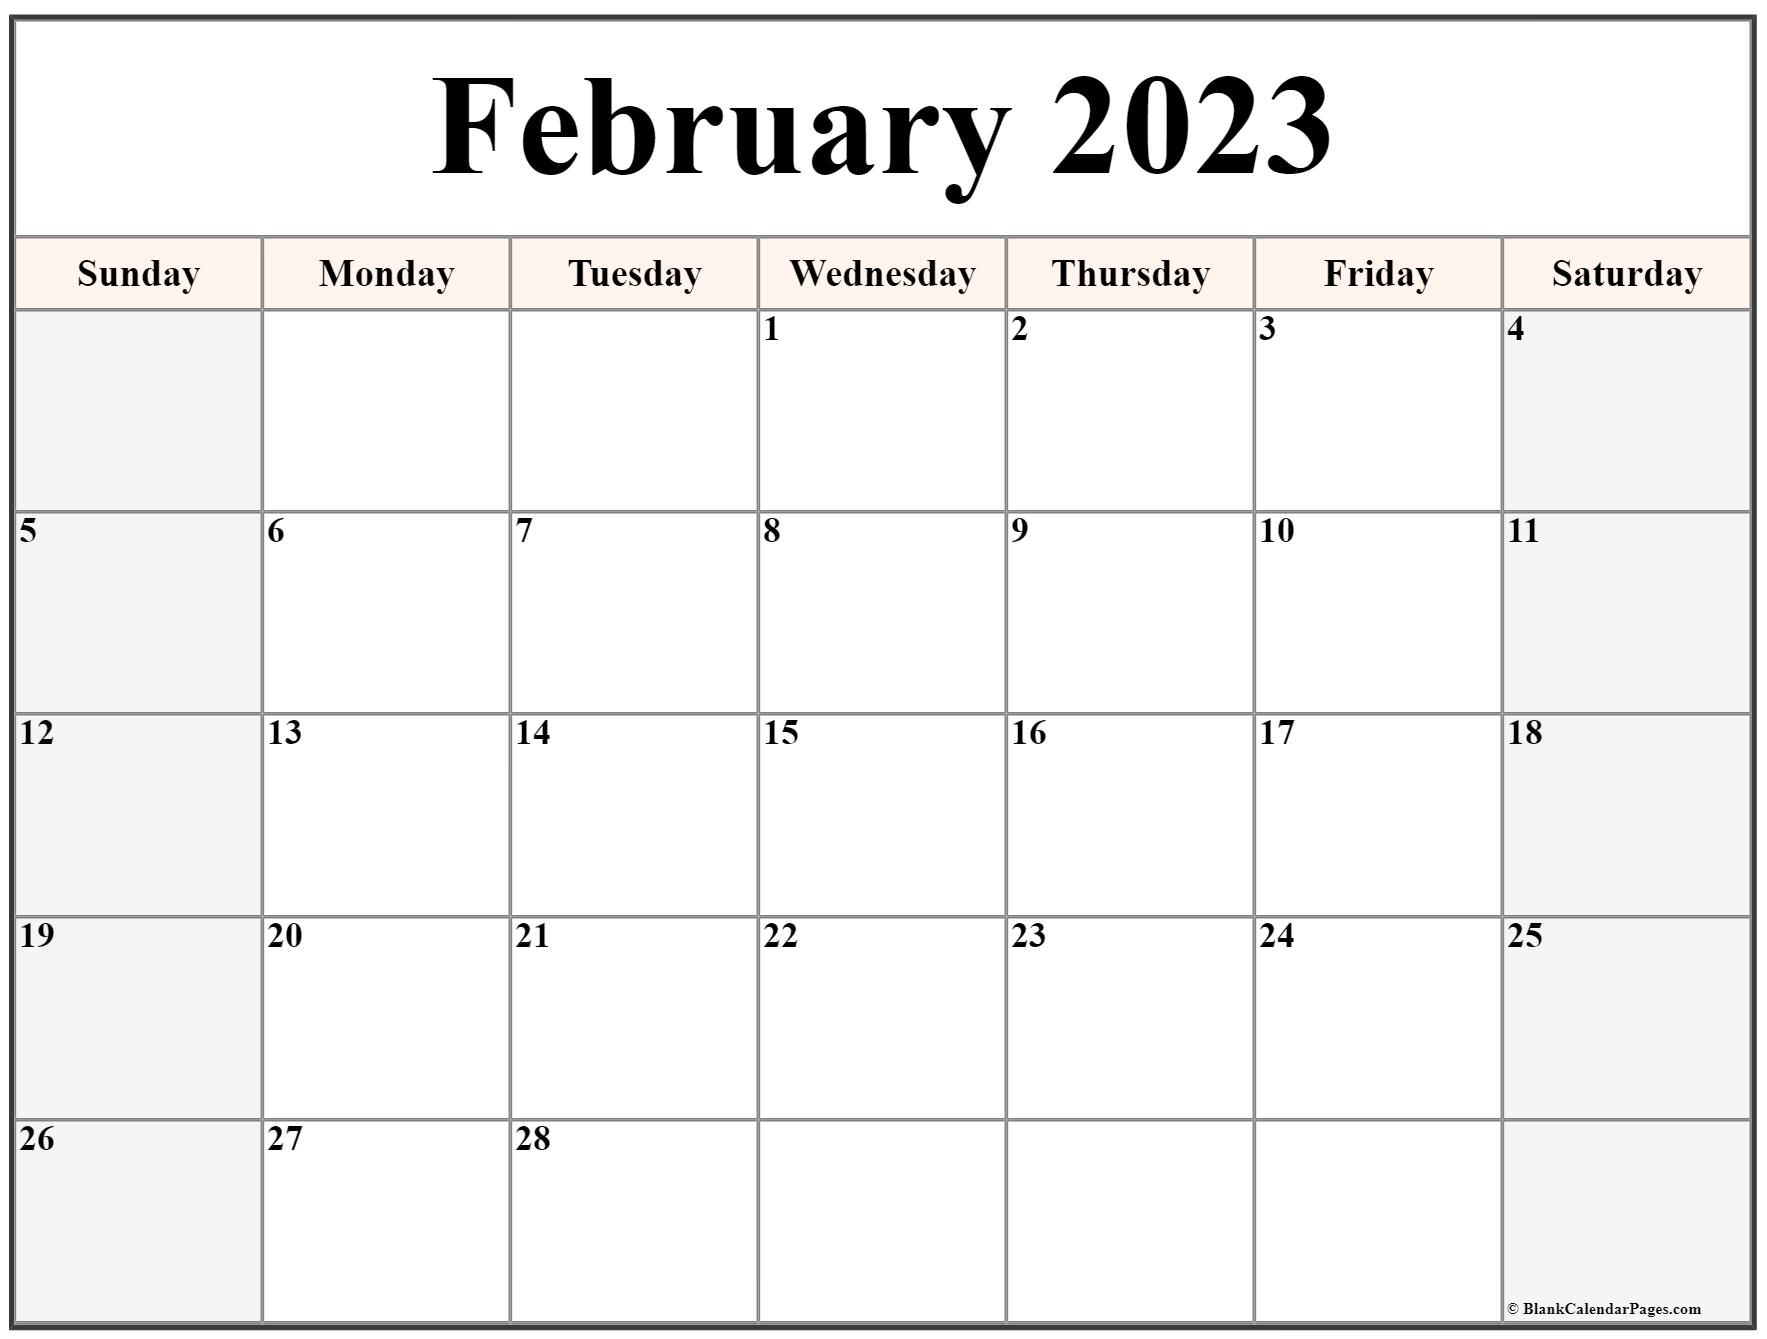 february-2023-calendar-templates-for-word-excel-and-pdf-2023calendar